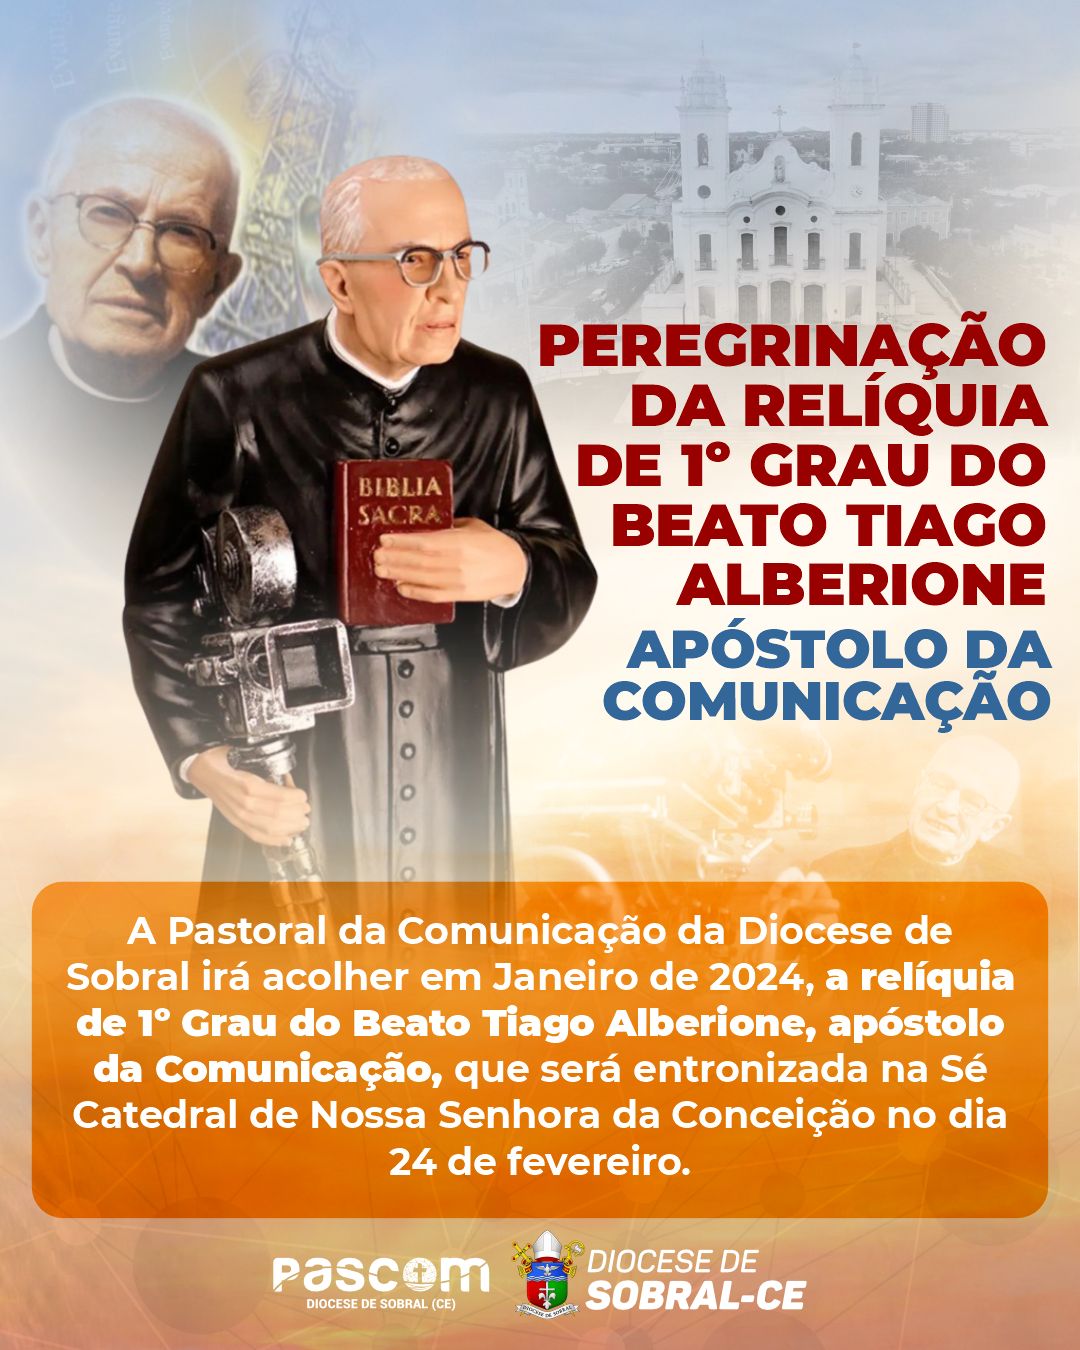 Peregrinação da relíquia de 1° Grau do Beato Tiago Alberione. Créditos: PASCOM Diocesana de Sobral